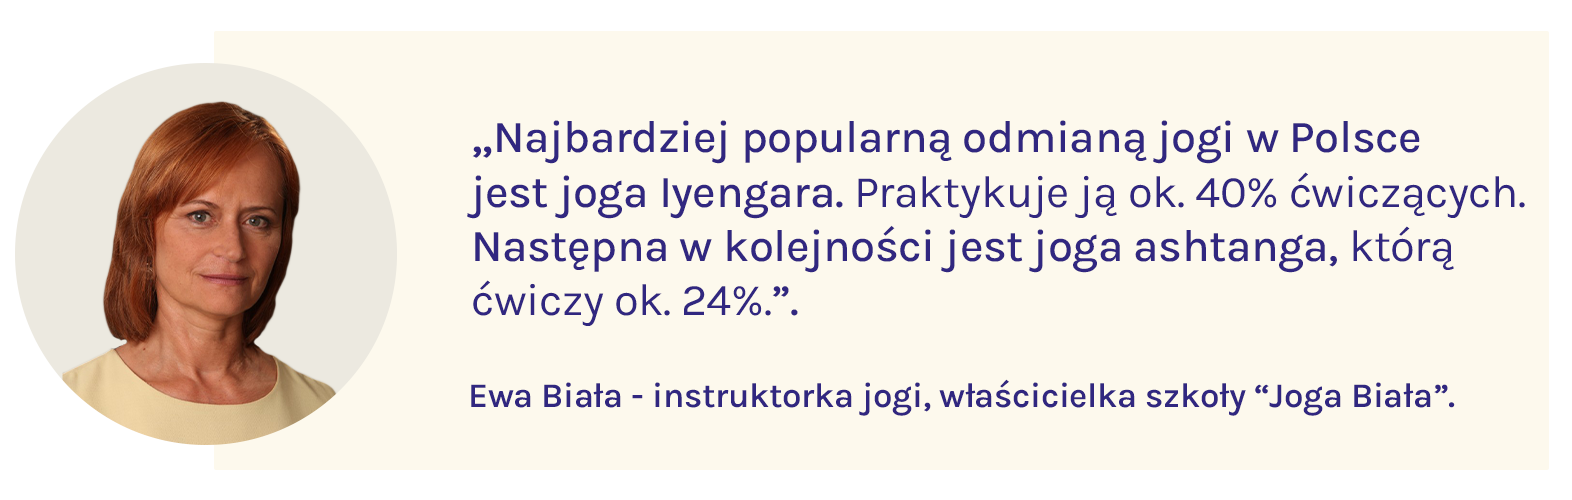 A quote from yogi Ewa Biała